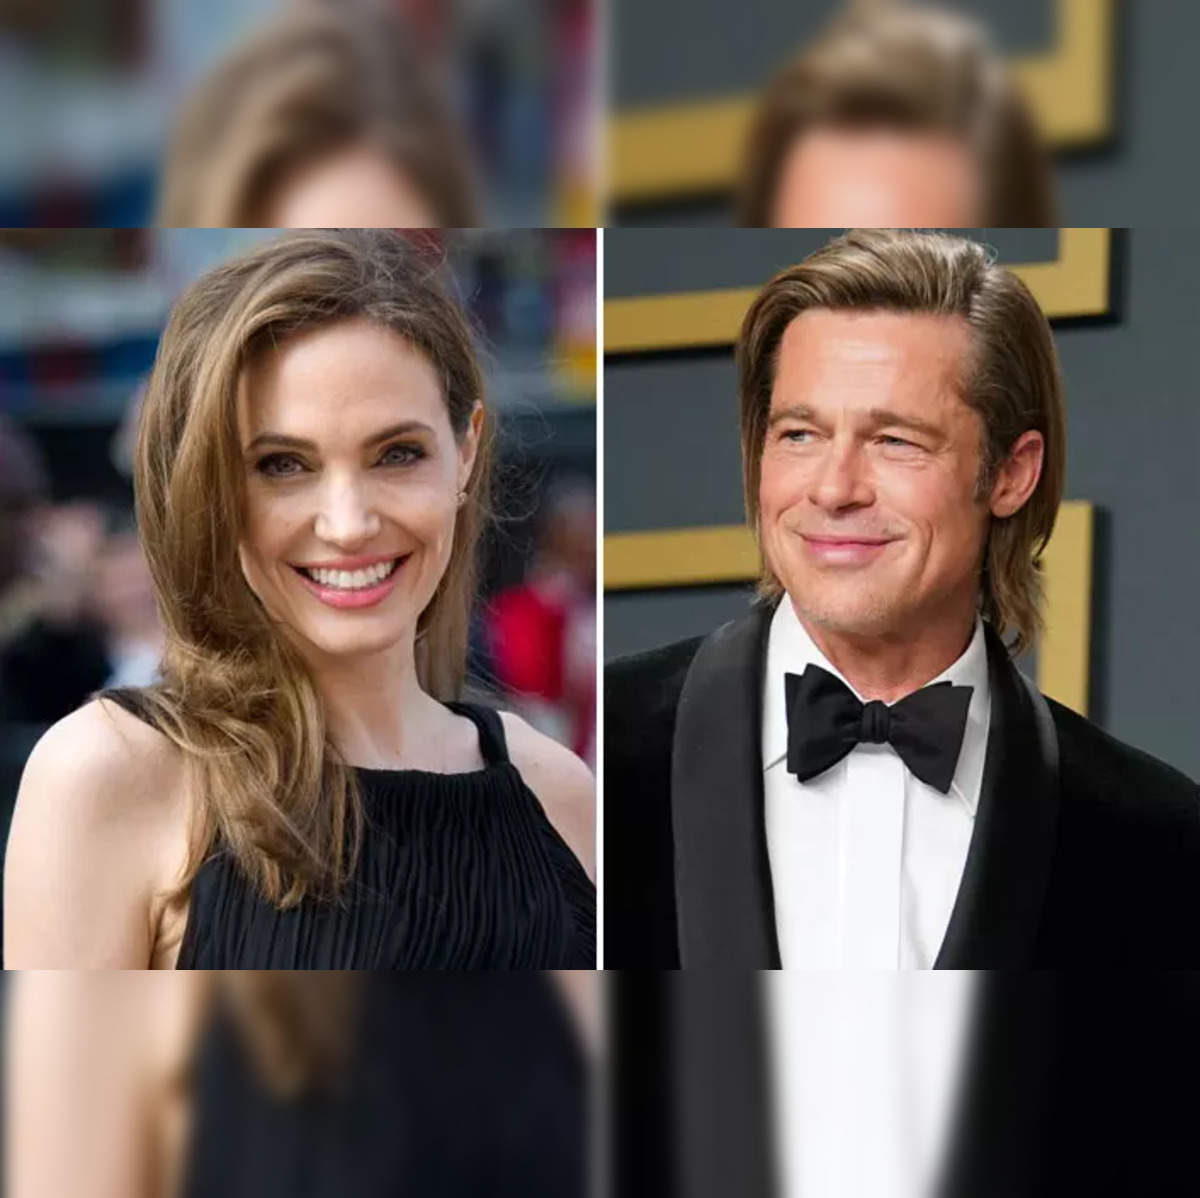 Brad Pitt vs Angelina Jolie: Brad Pitt to face Angelina Jolie in